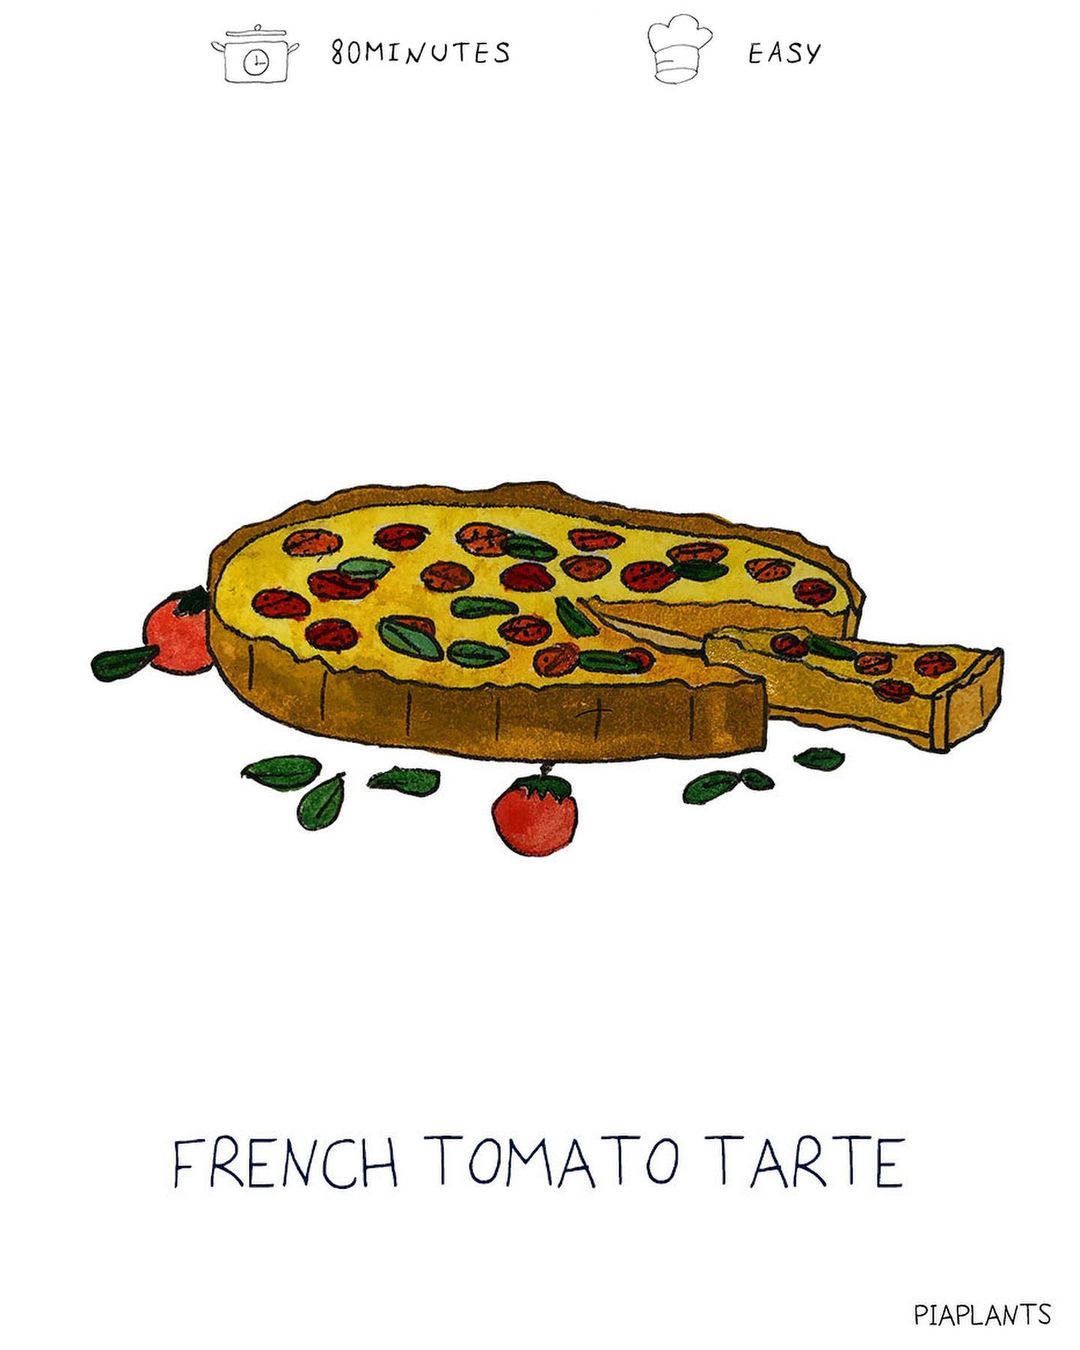 Tomato Tarte